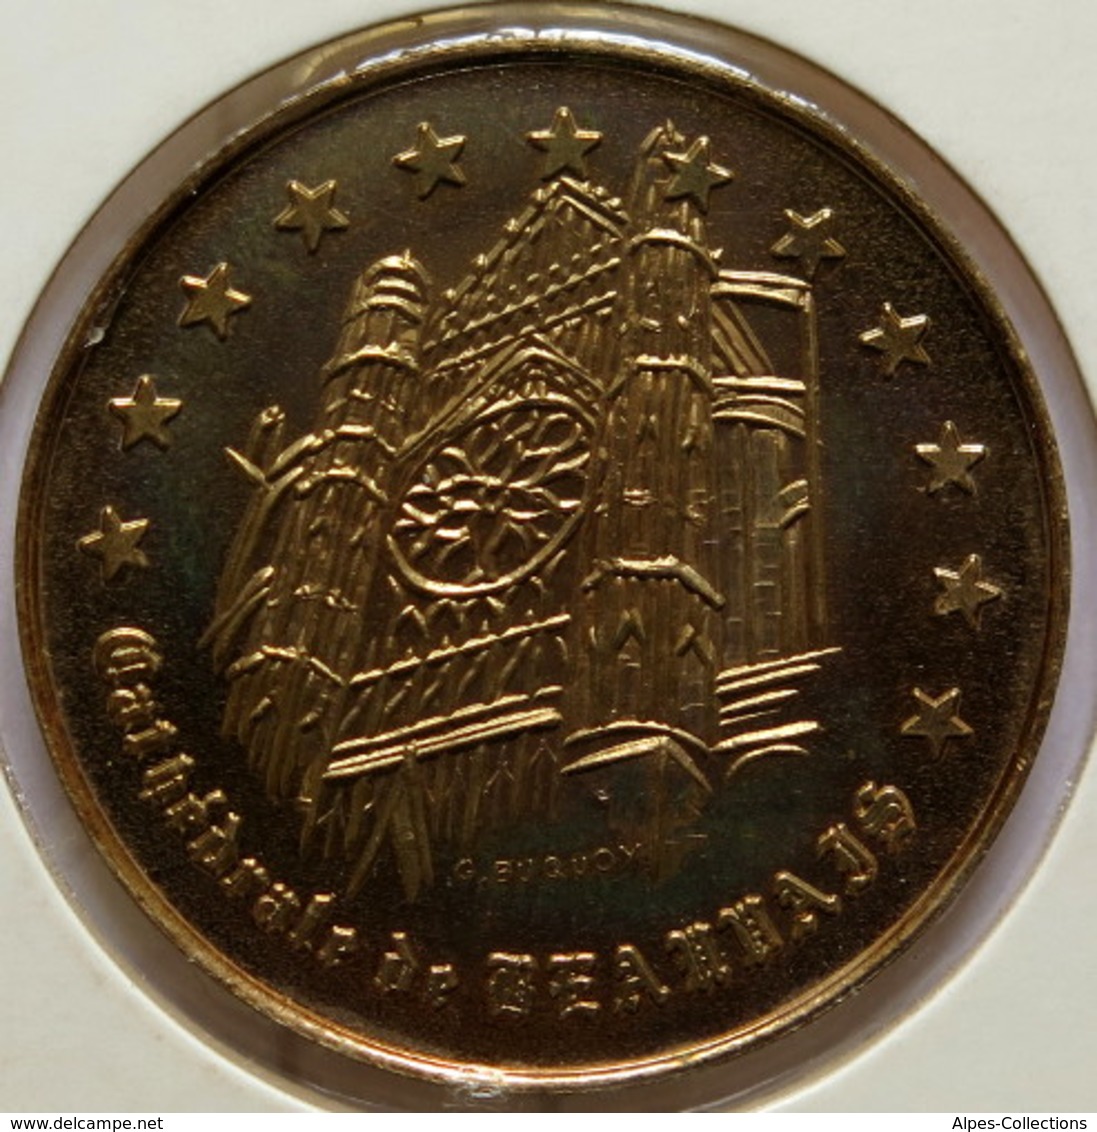 0049 - 1 EURO - DE BEAUVAIS- 1997 - Euros Des Villes